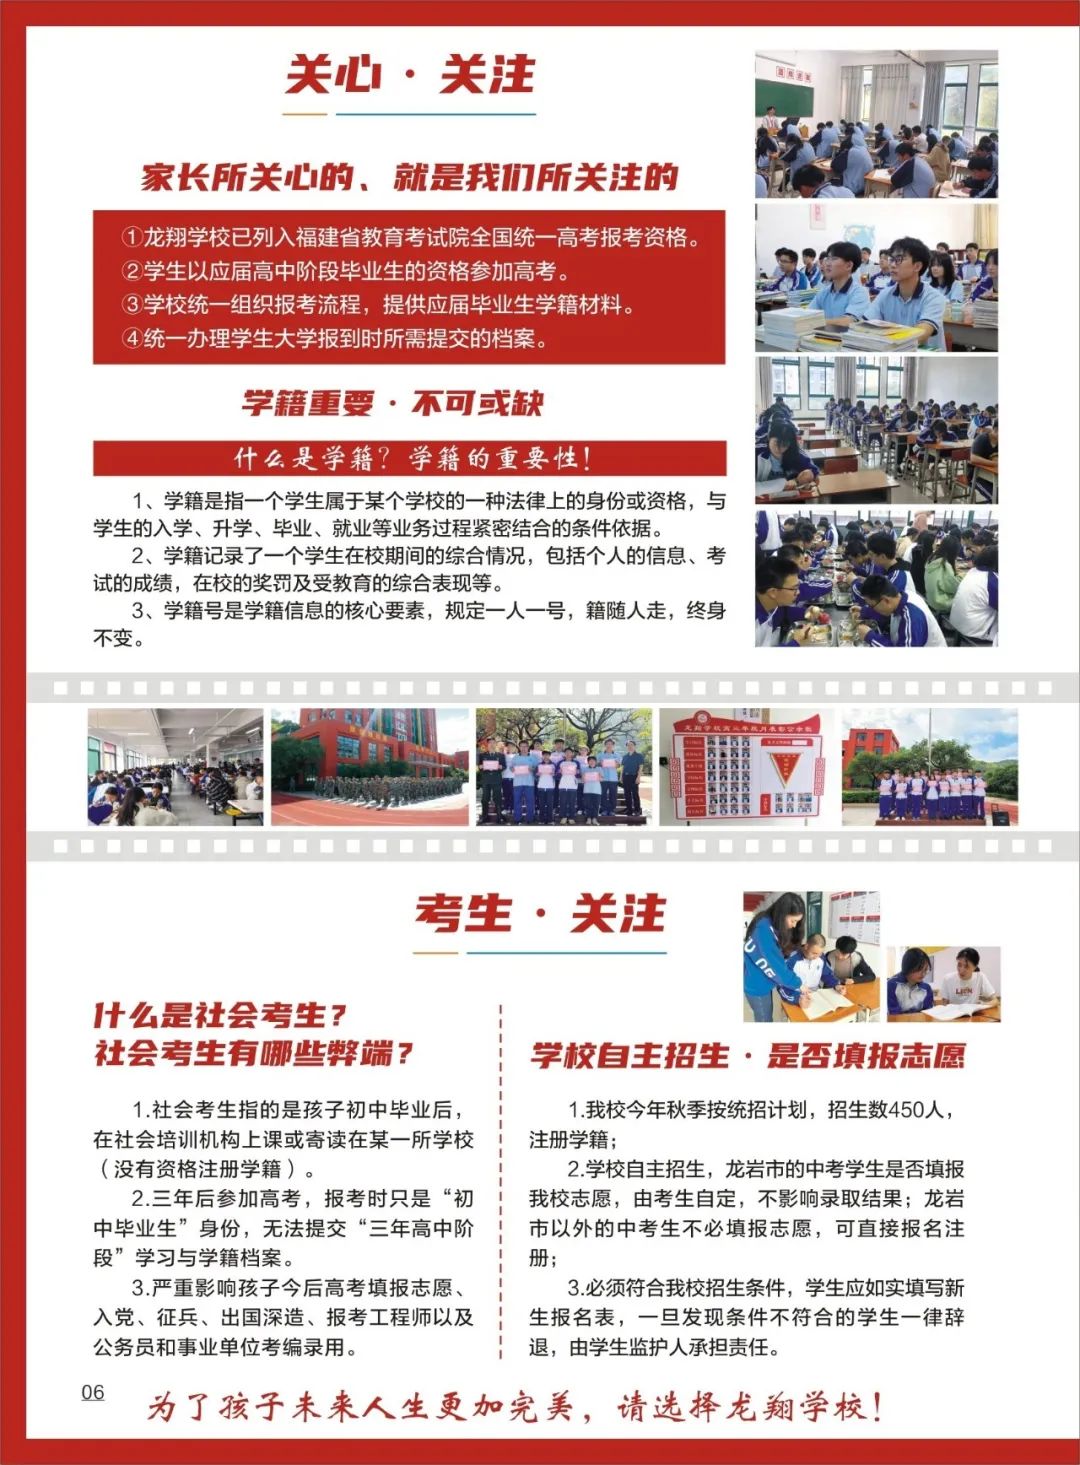 龙岩市龙翔职业技术学校2023招生简章